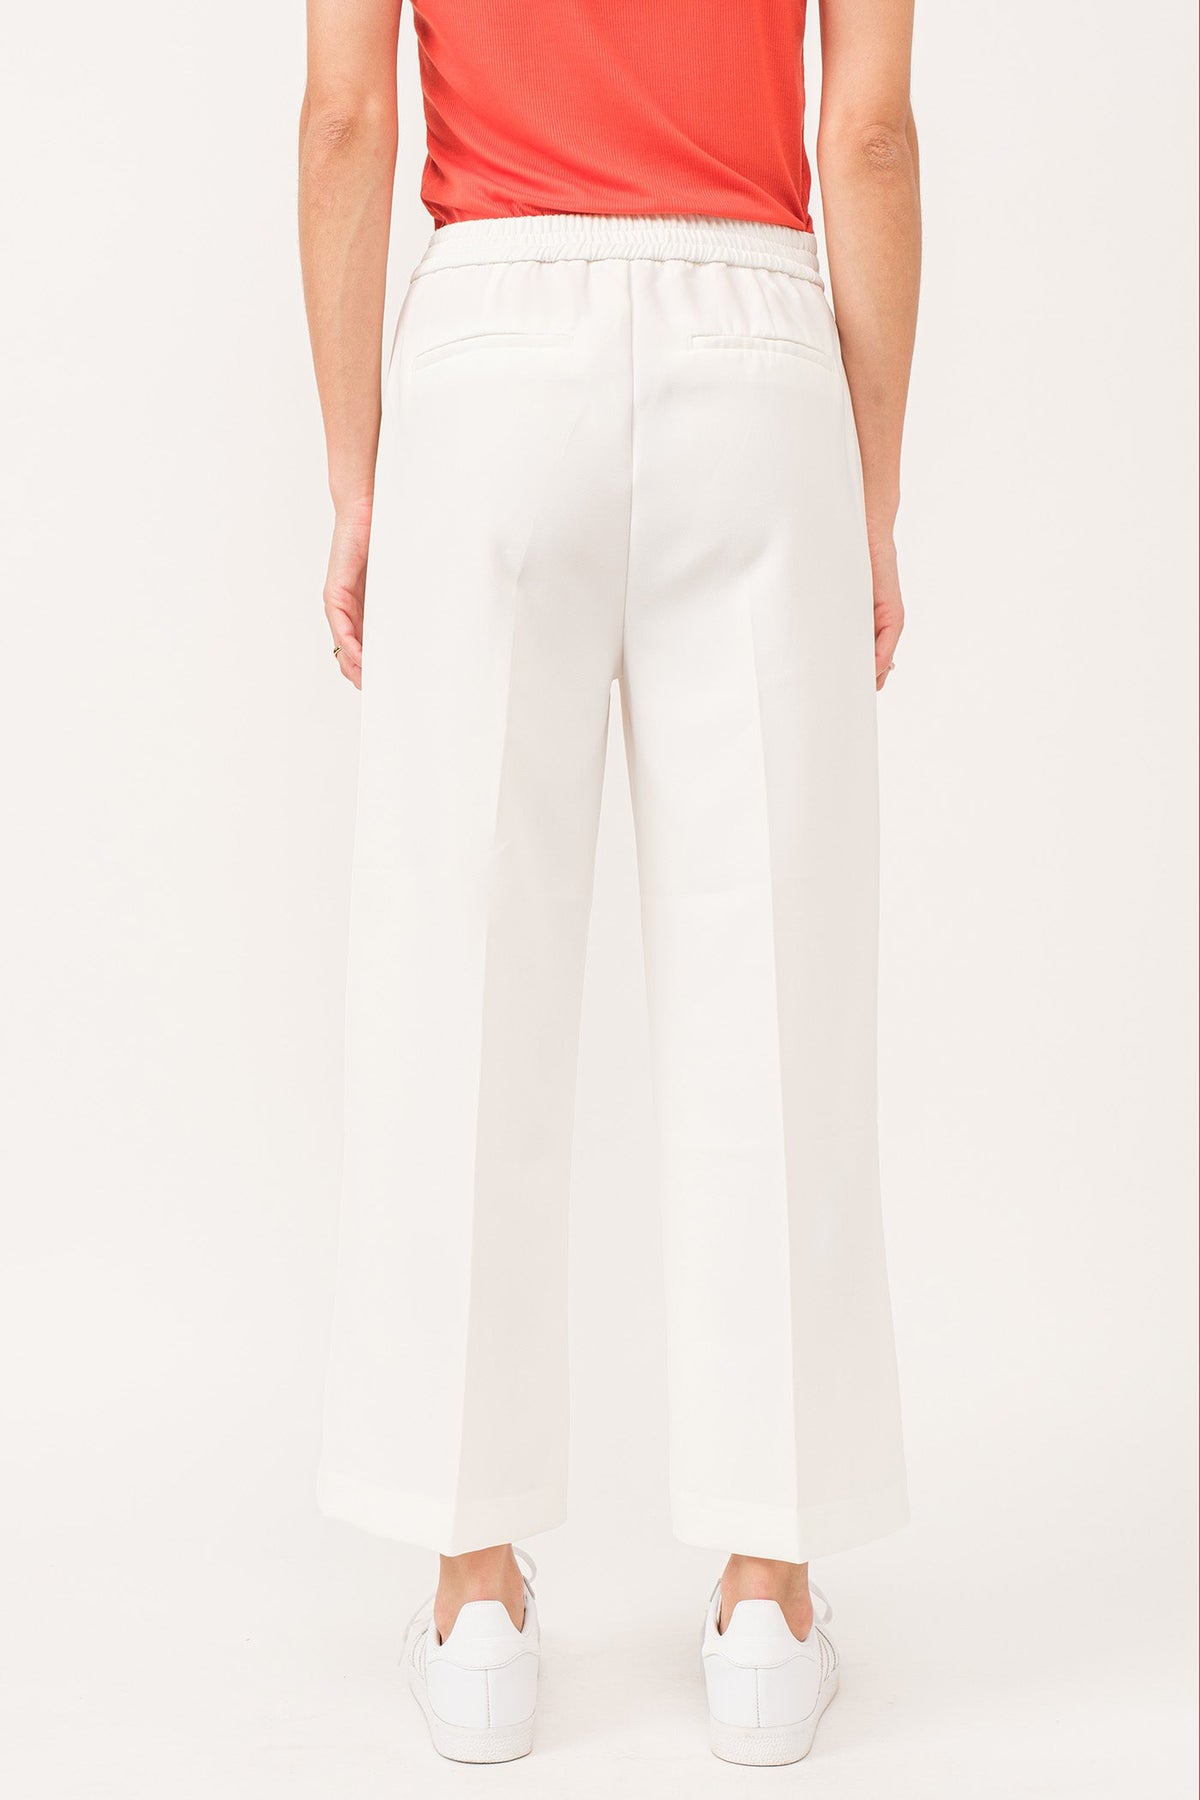 denali-high-rise-wide-leg-cropped-pants-white